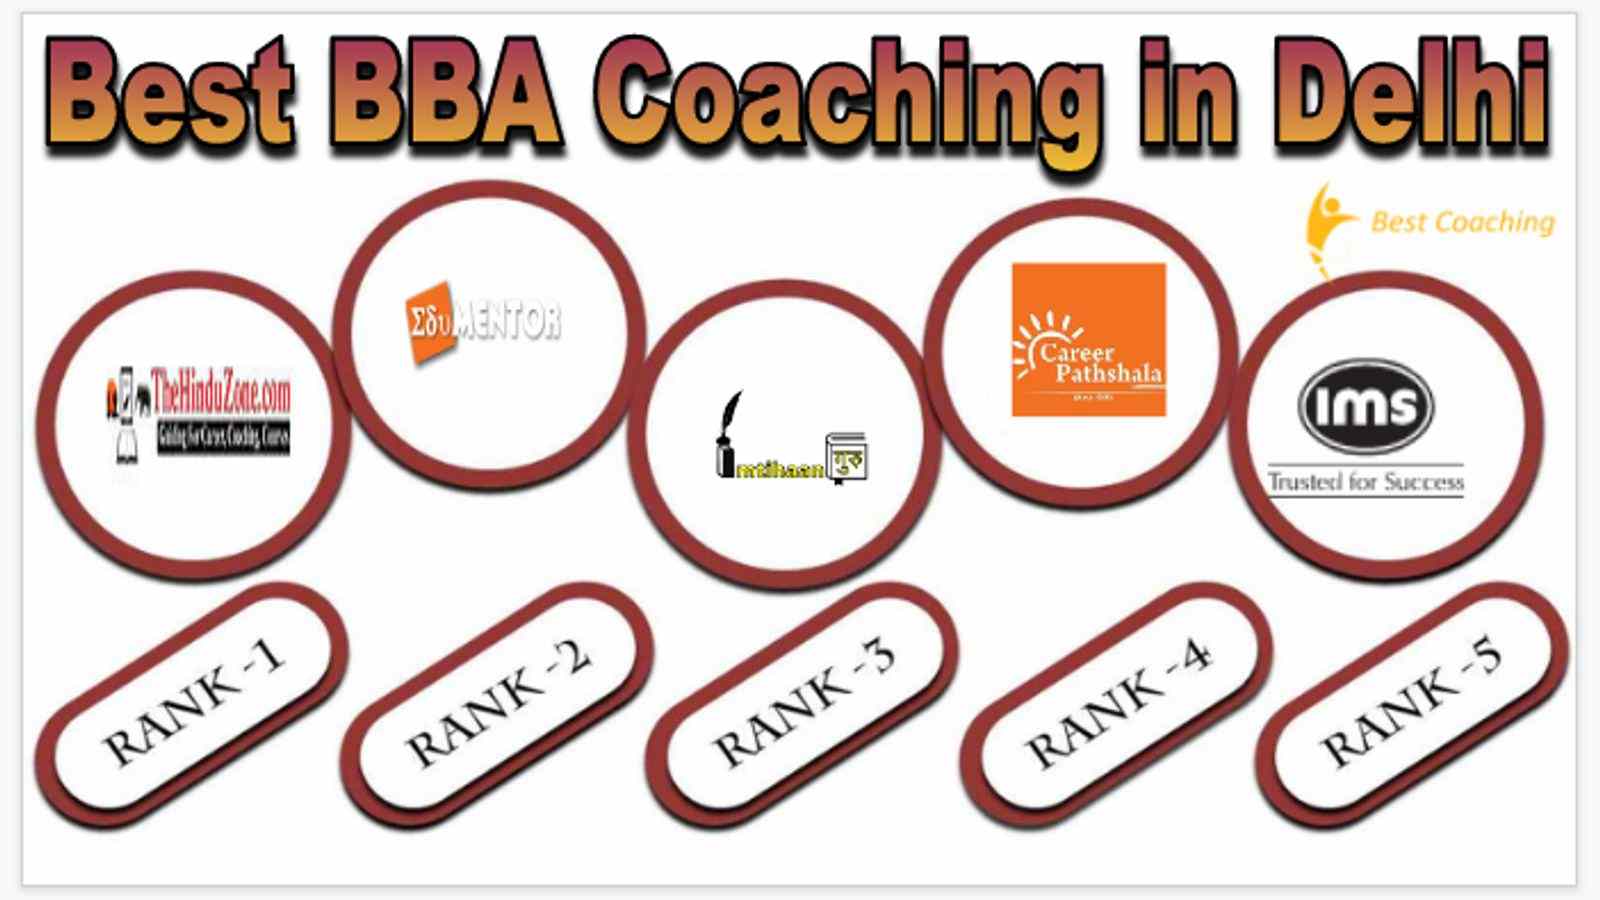 Best bba coaching in Delhi